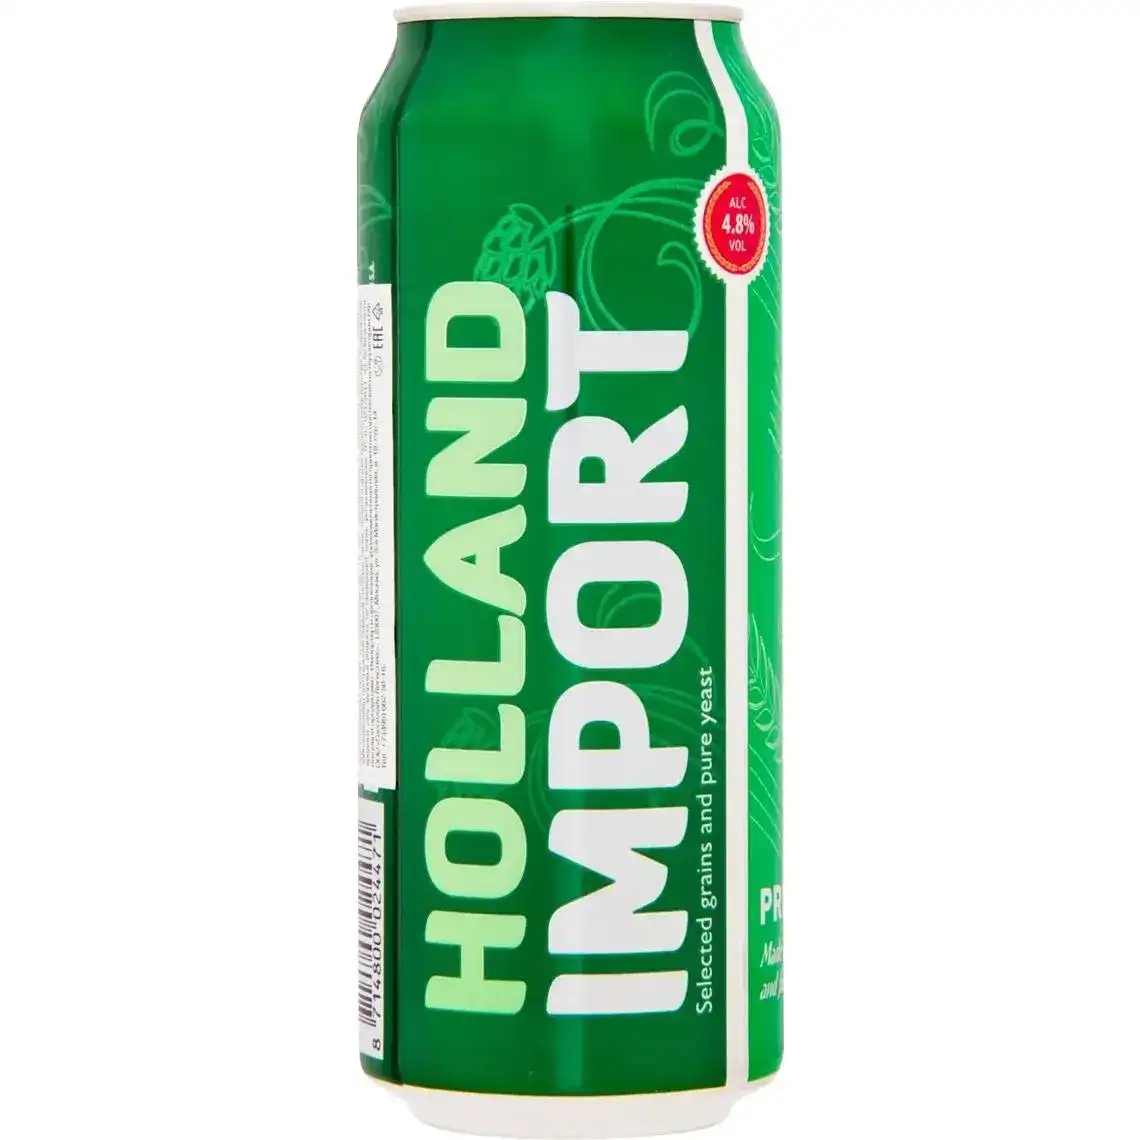 Пиво Holland Import світле фільтроване 4.8% 0.5 л